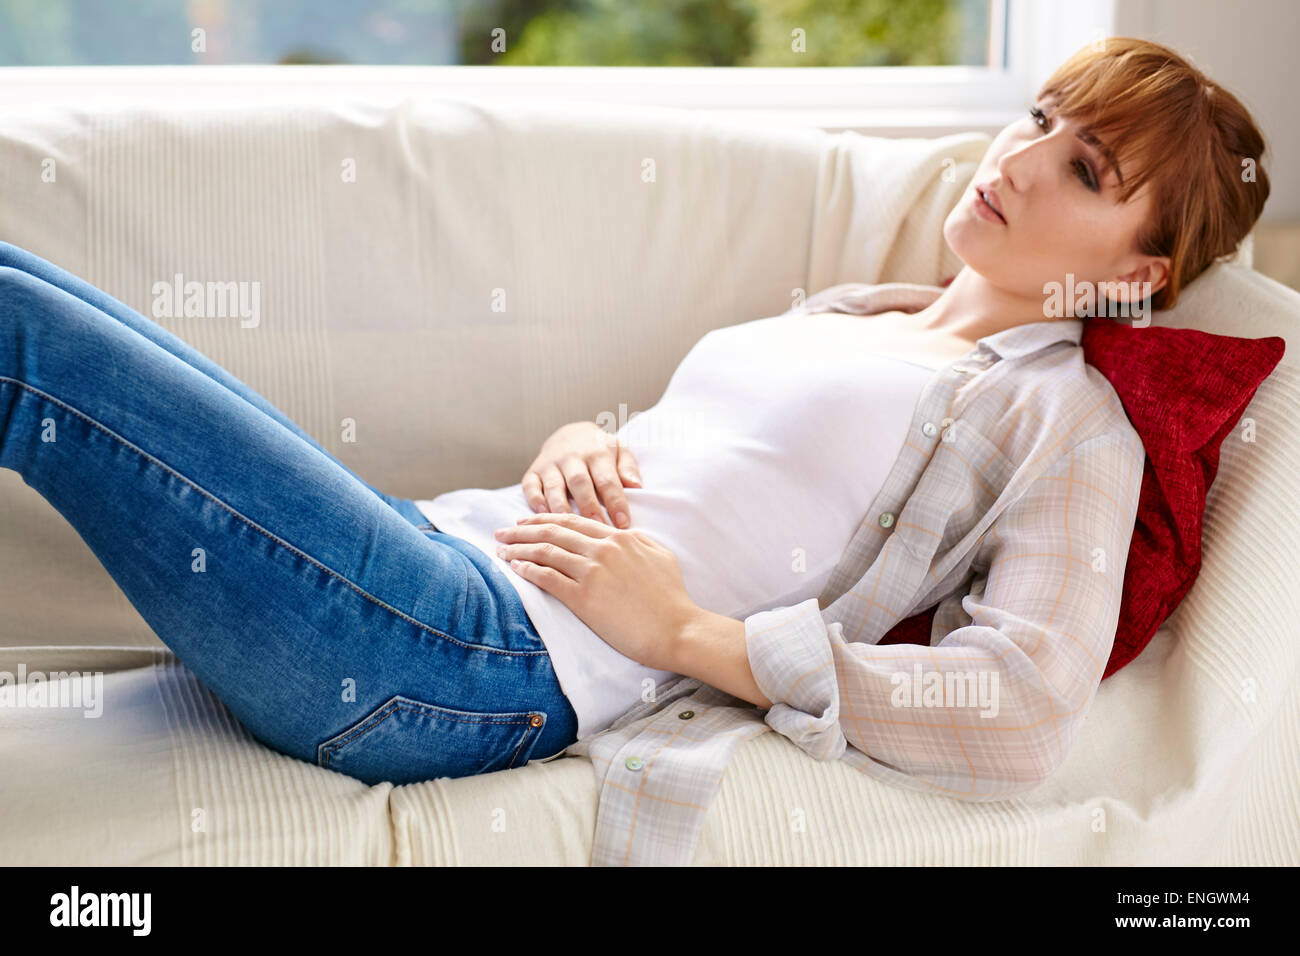 Girl holding her abdomen Stock Photo